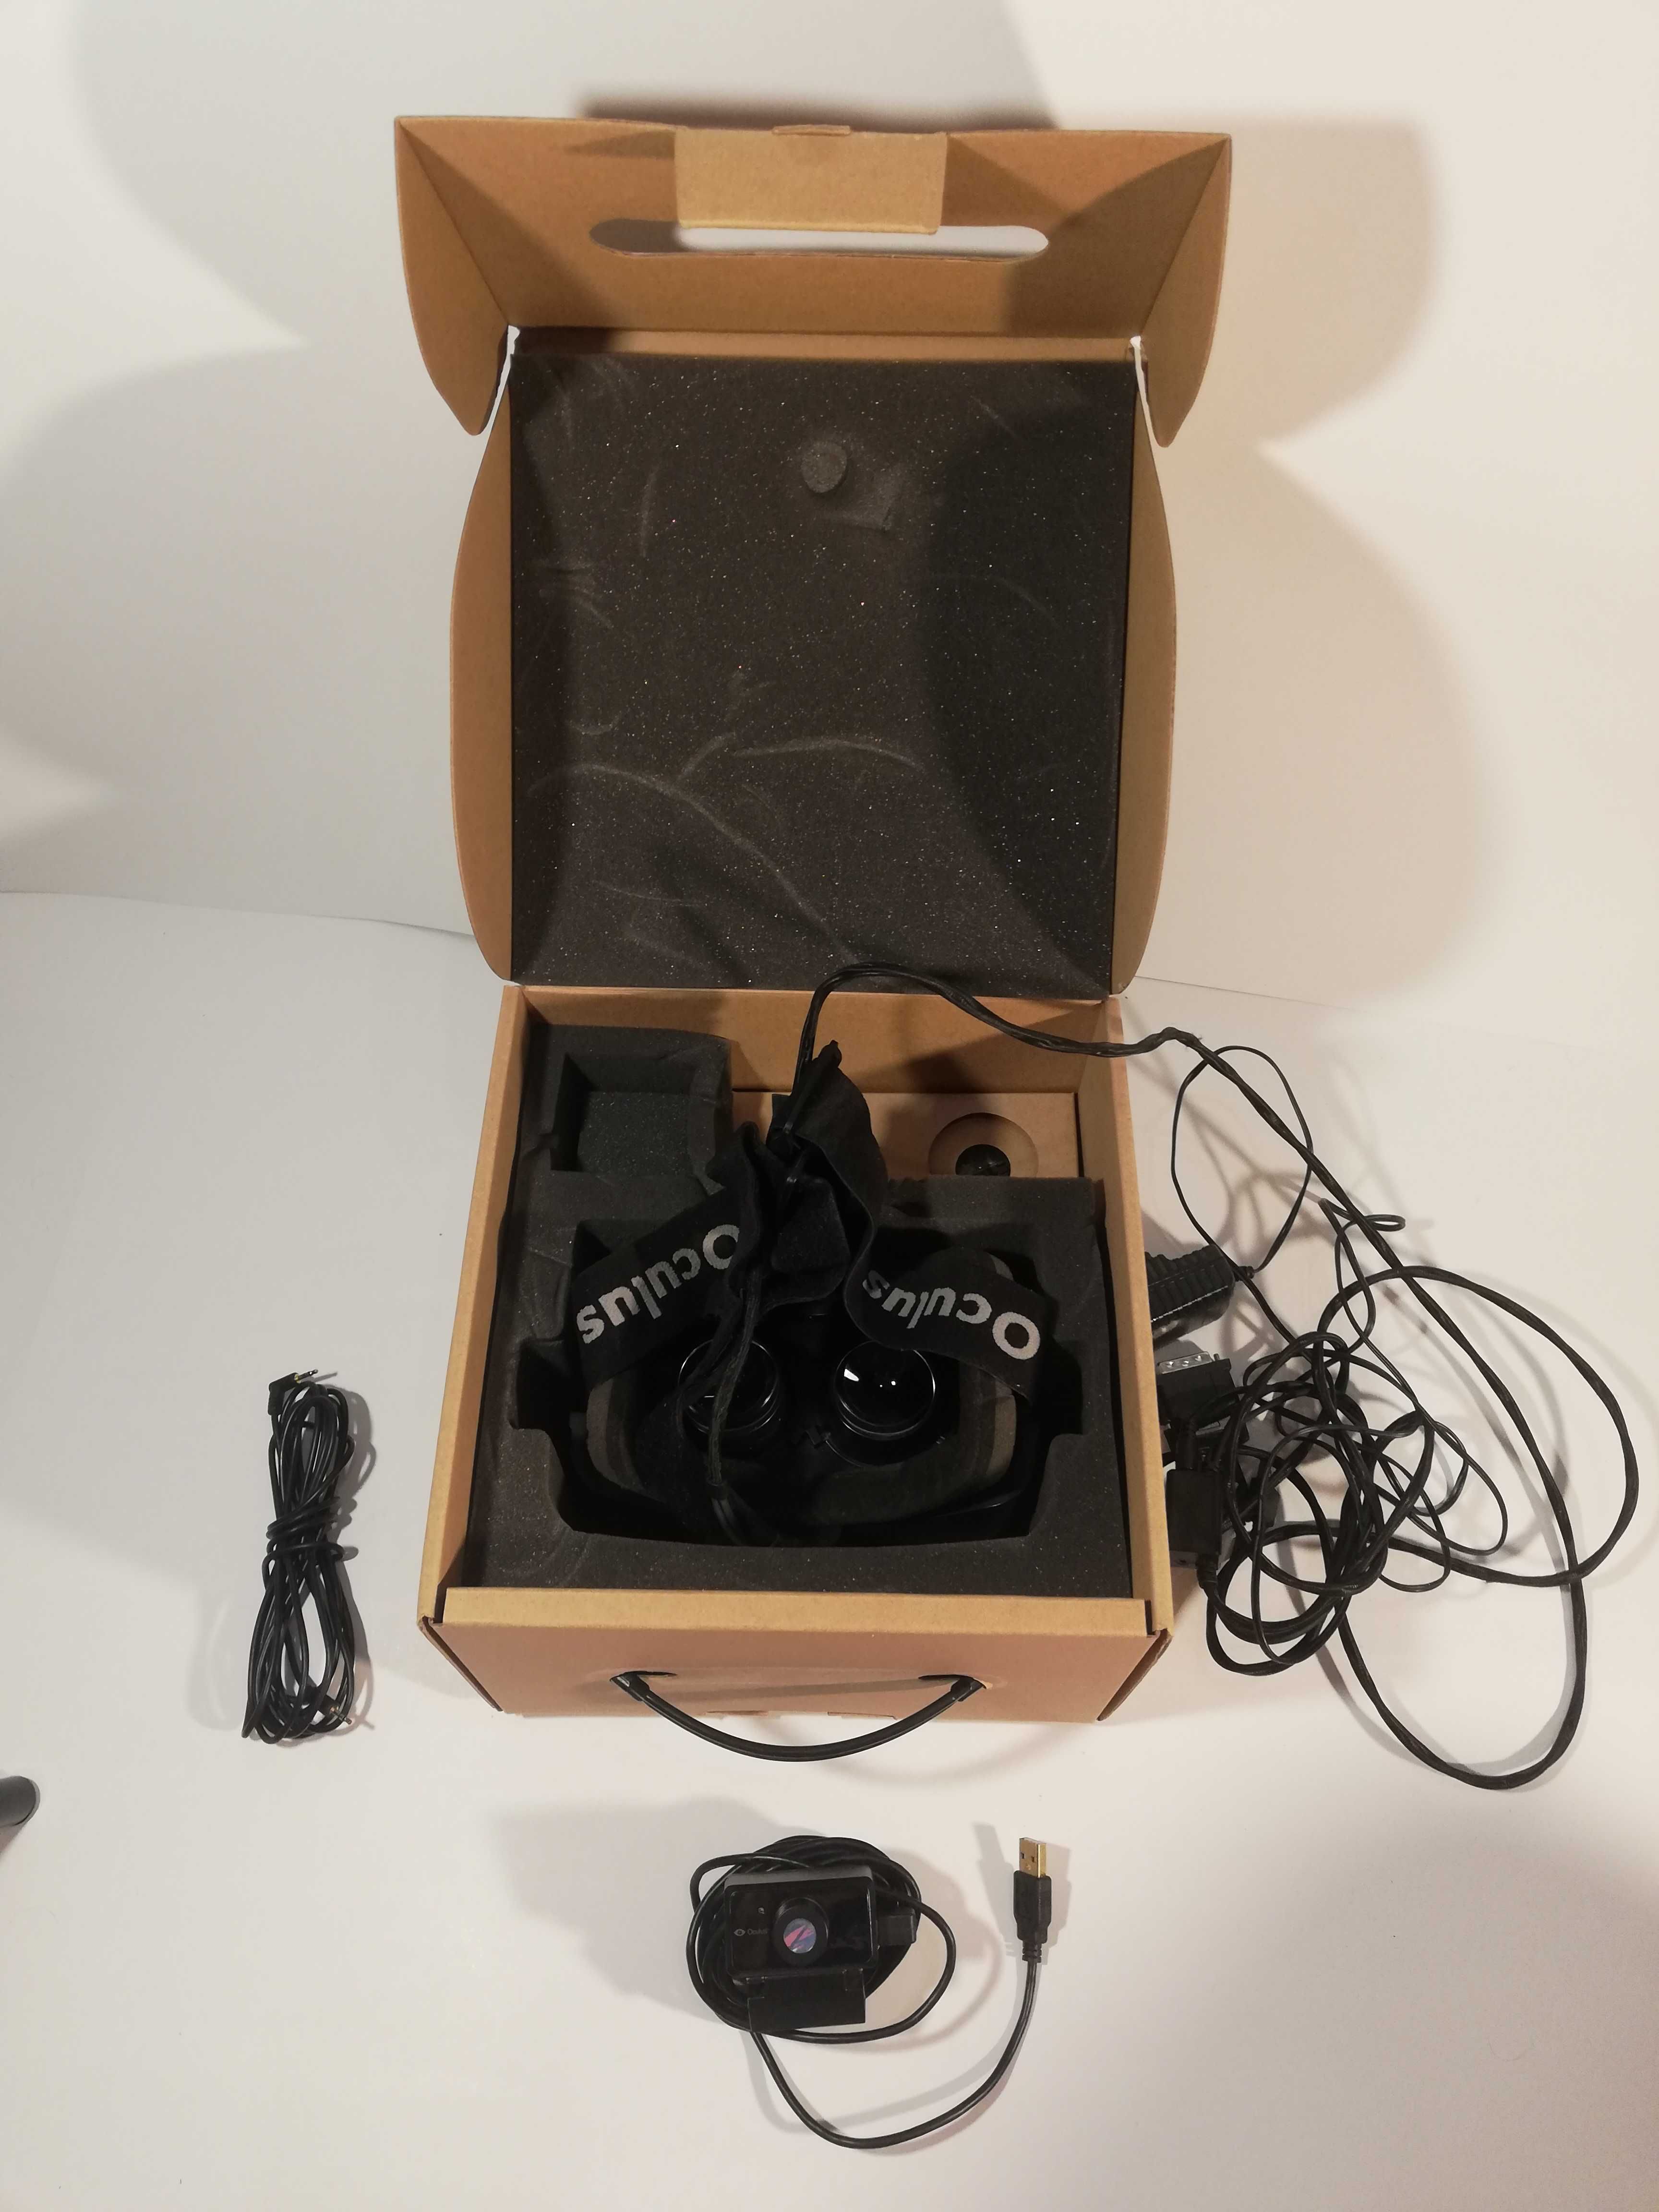 Oculus Rift DK 2 Development Kit 2